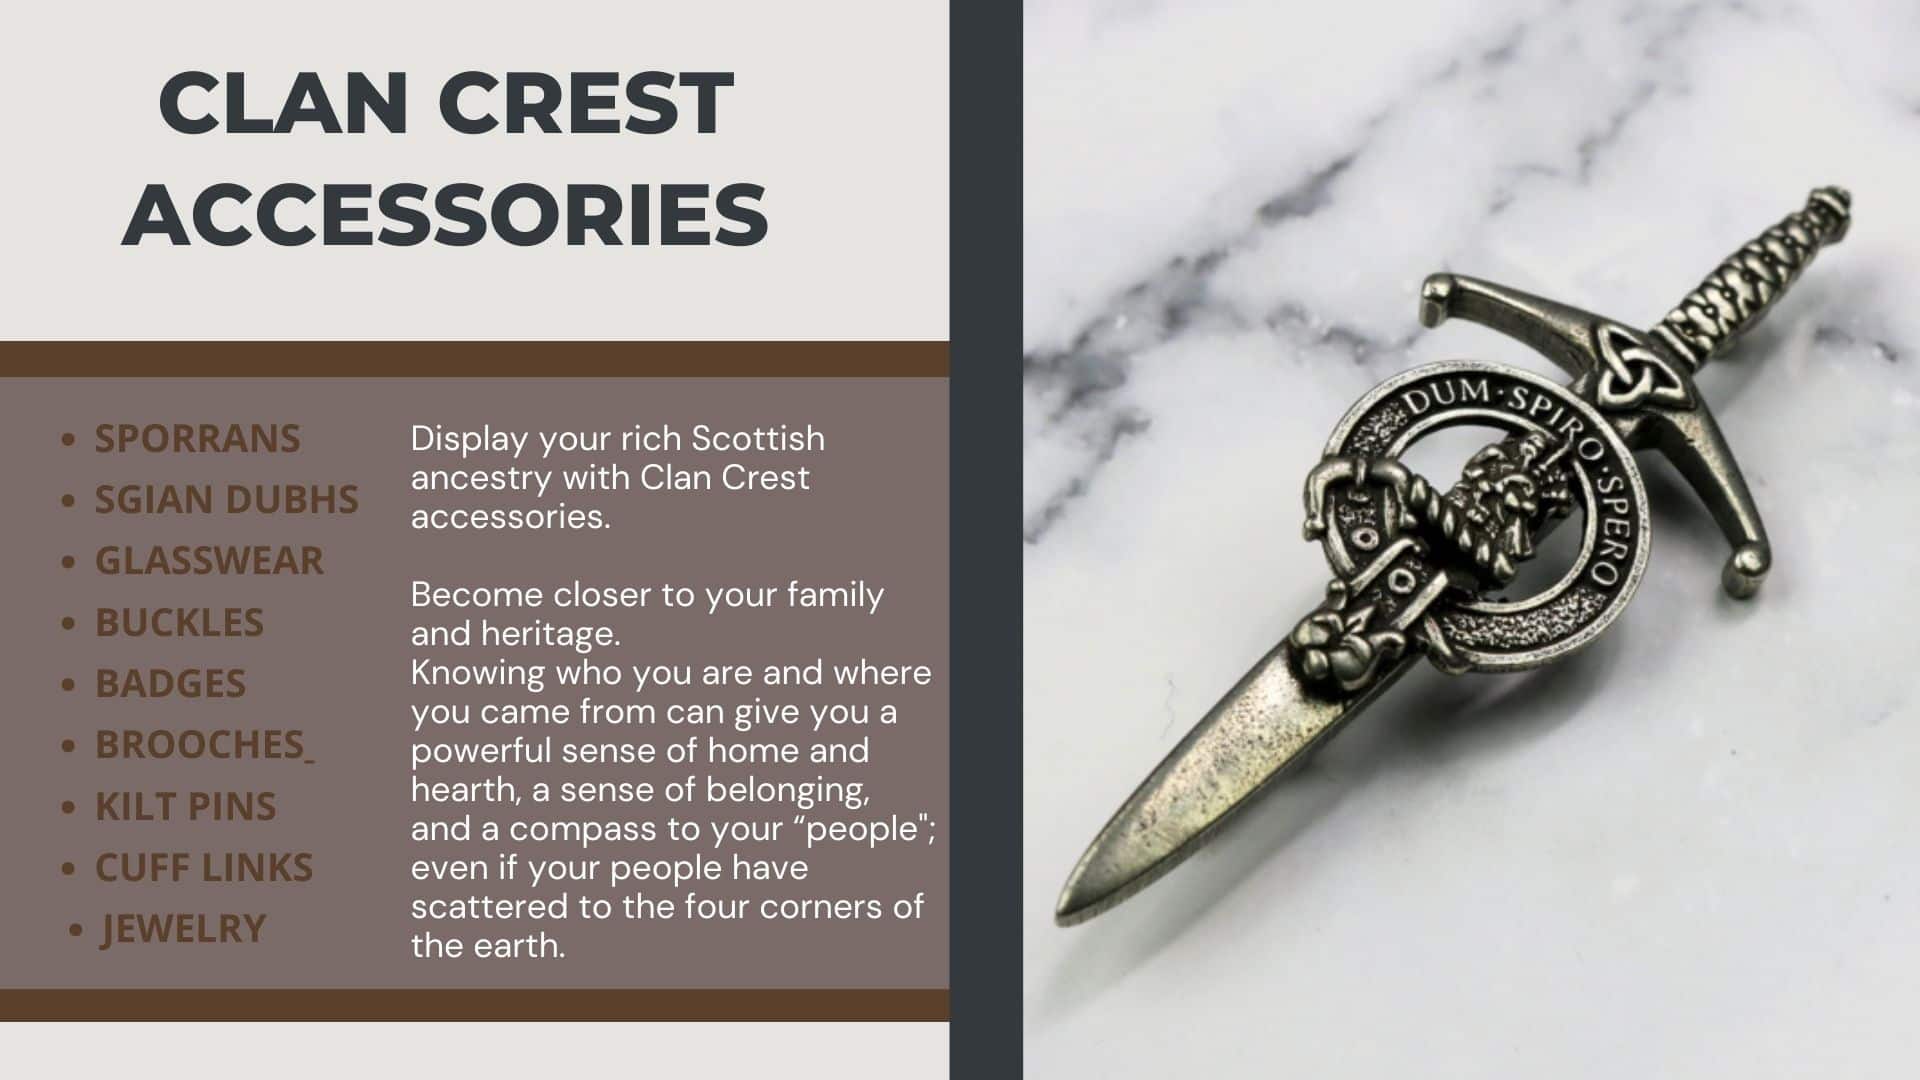 Clan crest accessories.